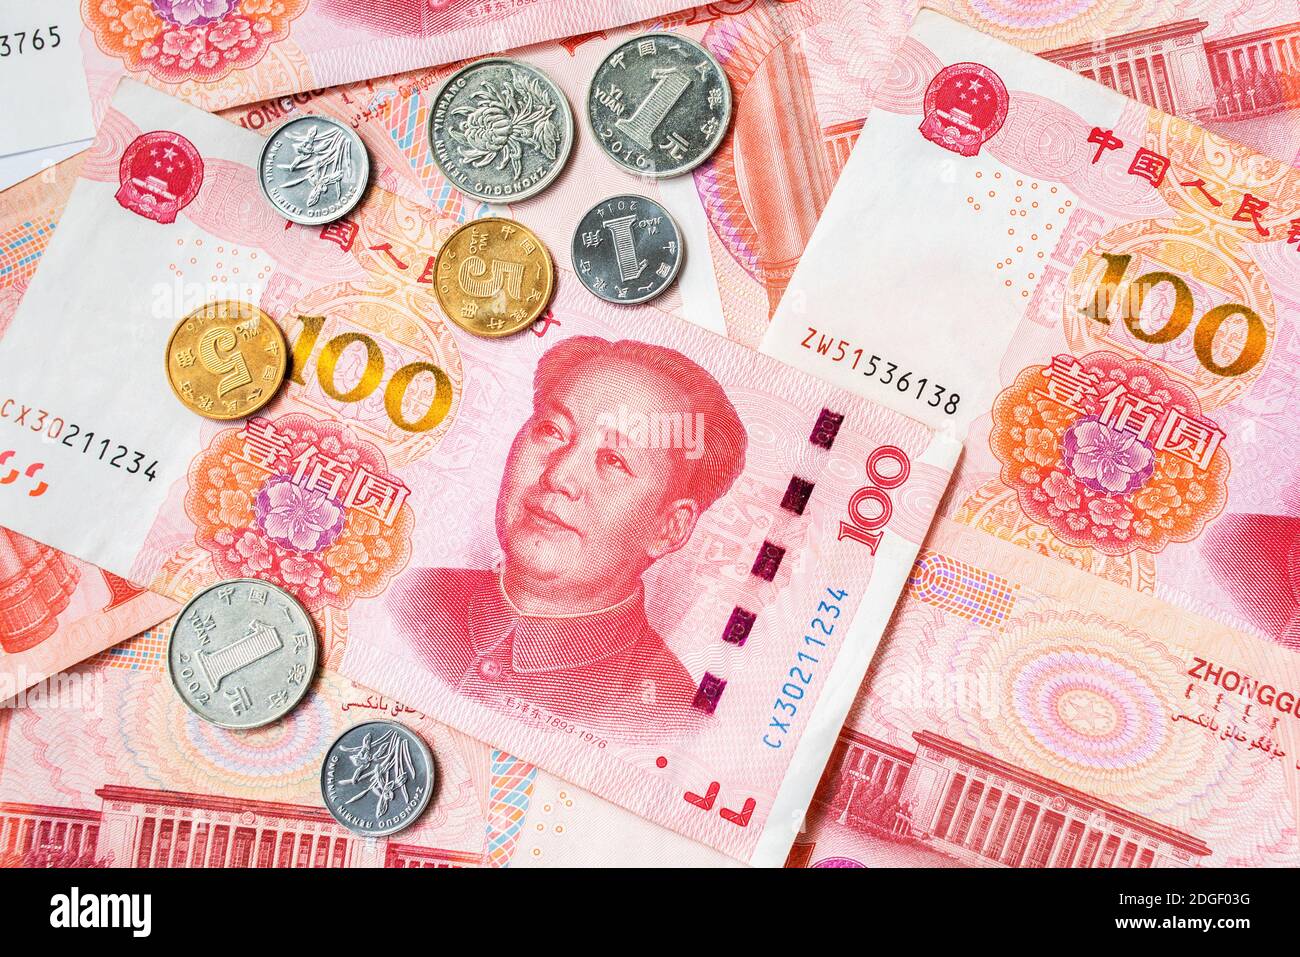 Offizielle Währung von China. Renminbi, Abkürzung RMB. Yuan Grundeinheit des Renminbi. Chinesisches Geld. Münzen und Papierrechnungen. Stockfoto